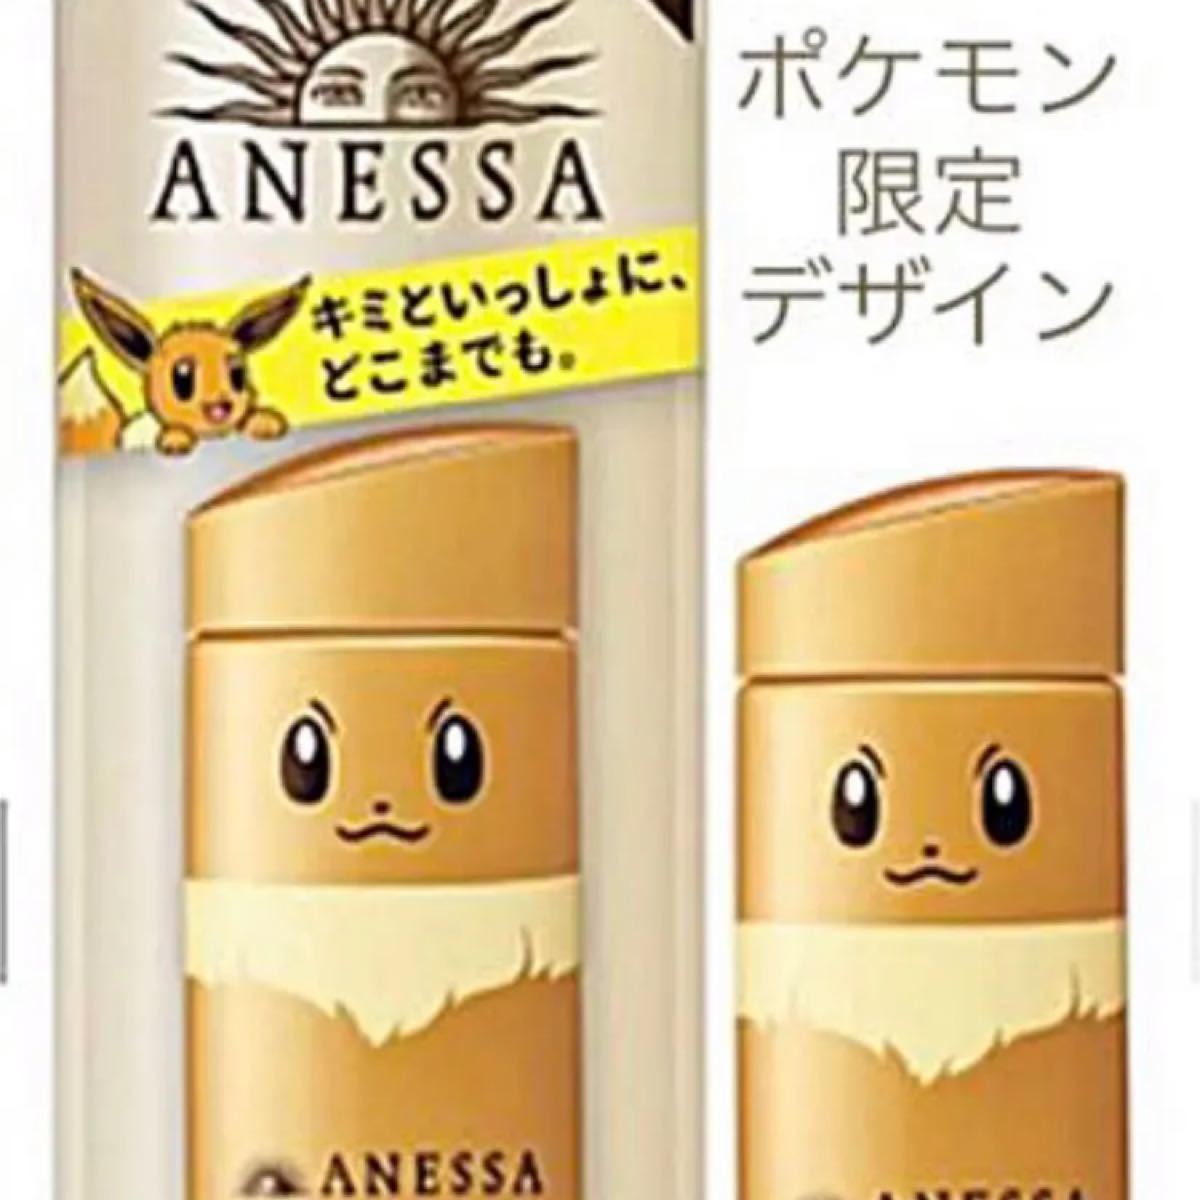 ANESSA(アネッサ) アネッサ 50 SPF パーフェクトUV スキンケアミルク a